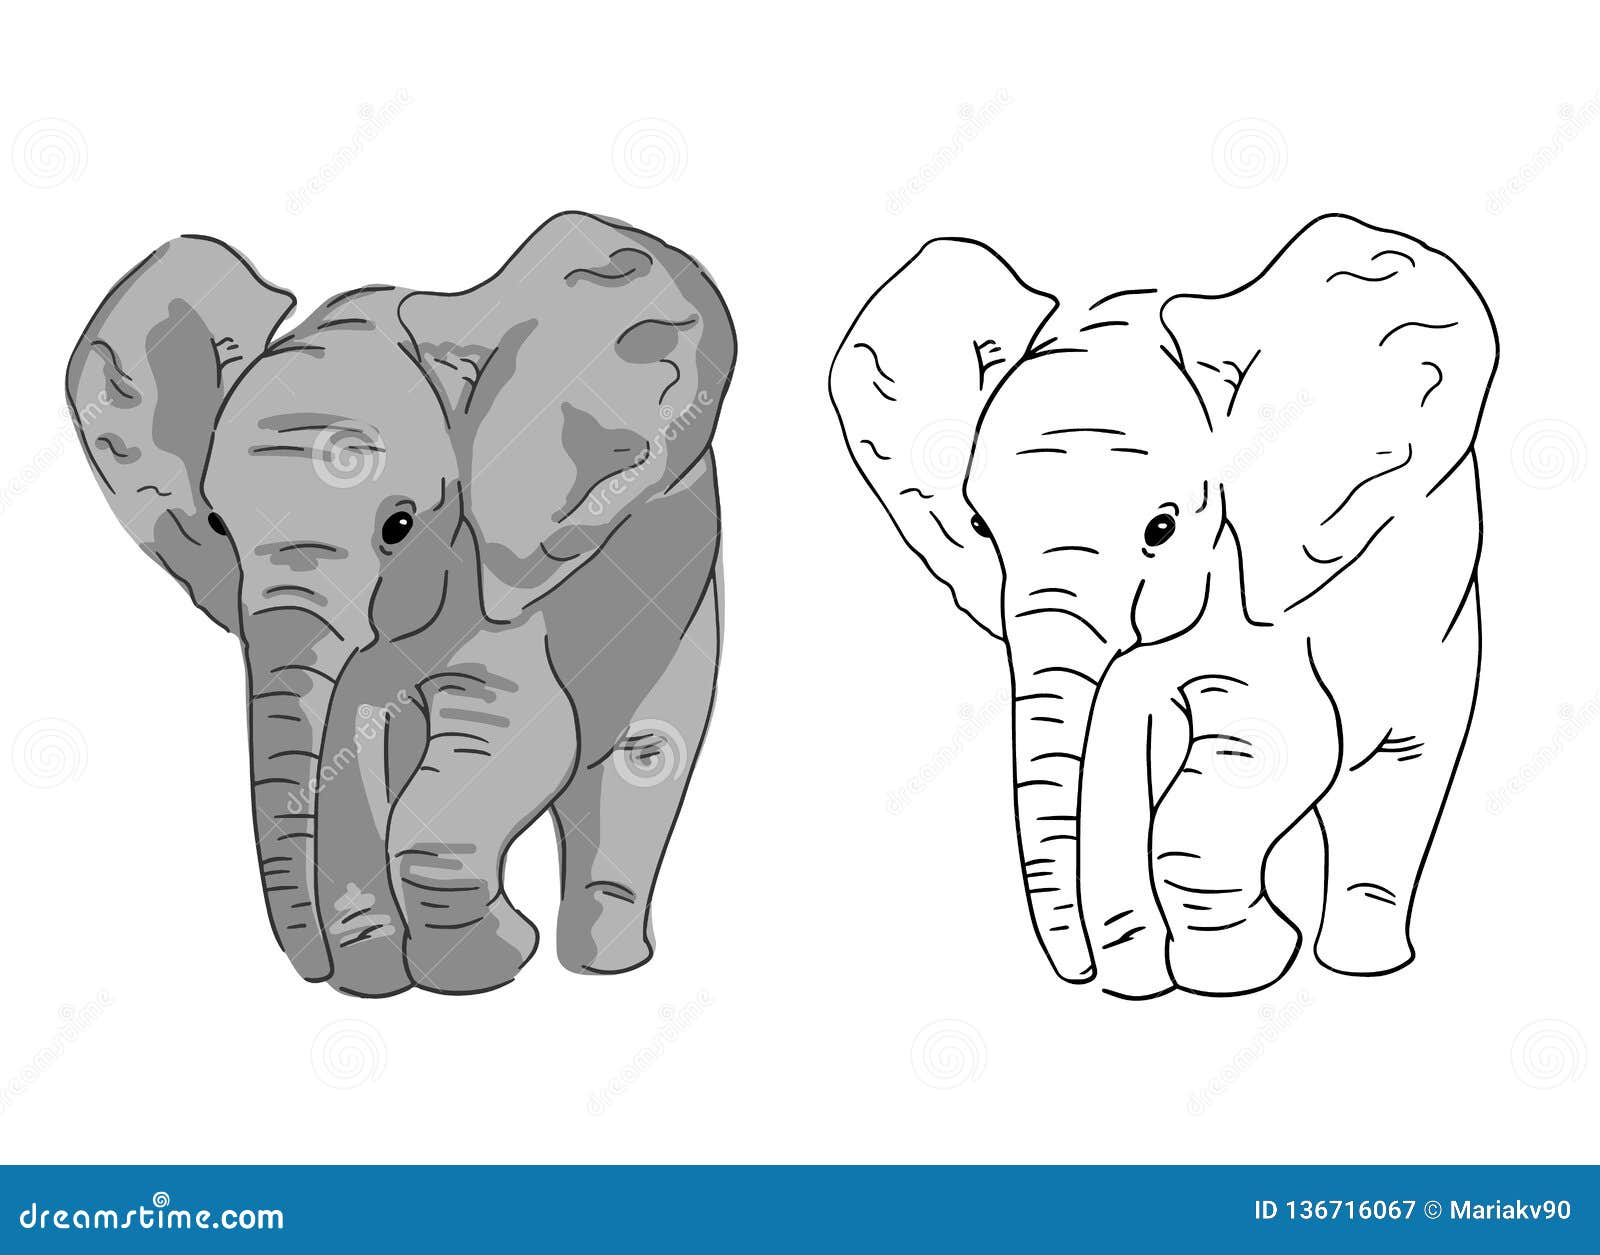 Семья слонов эскиз контур